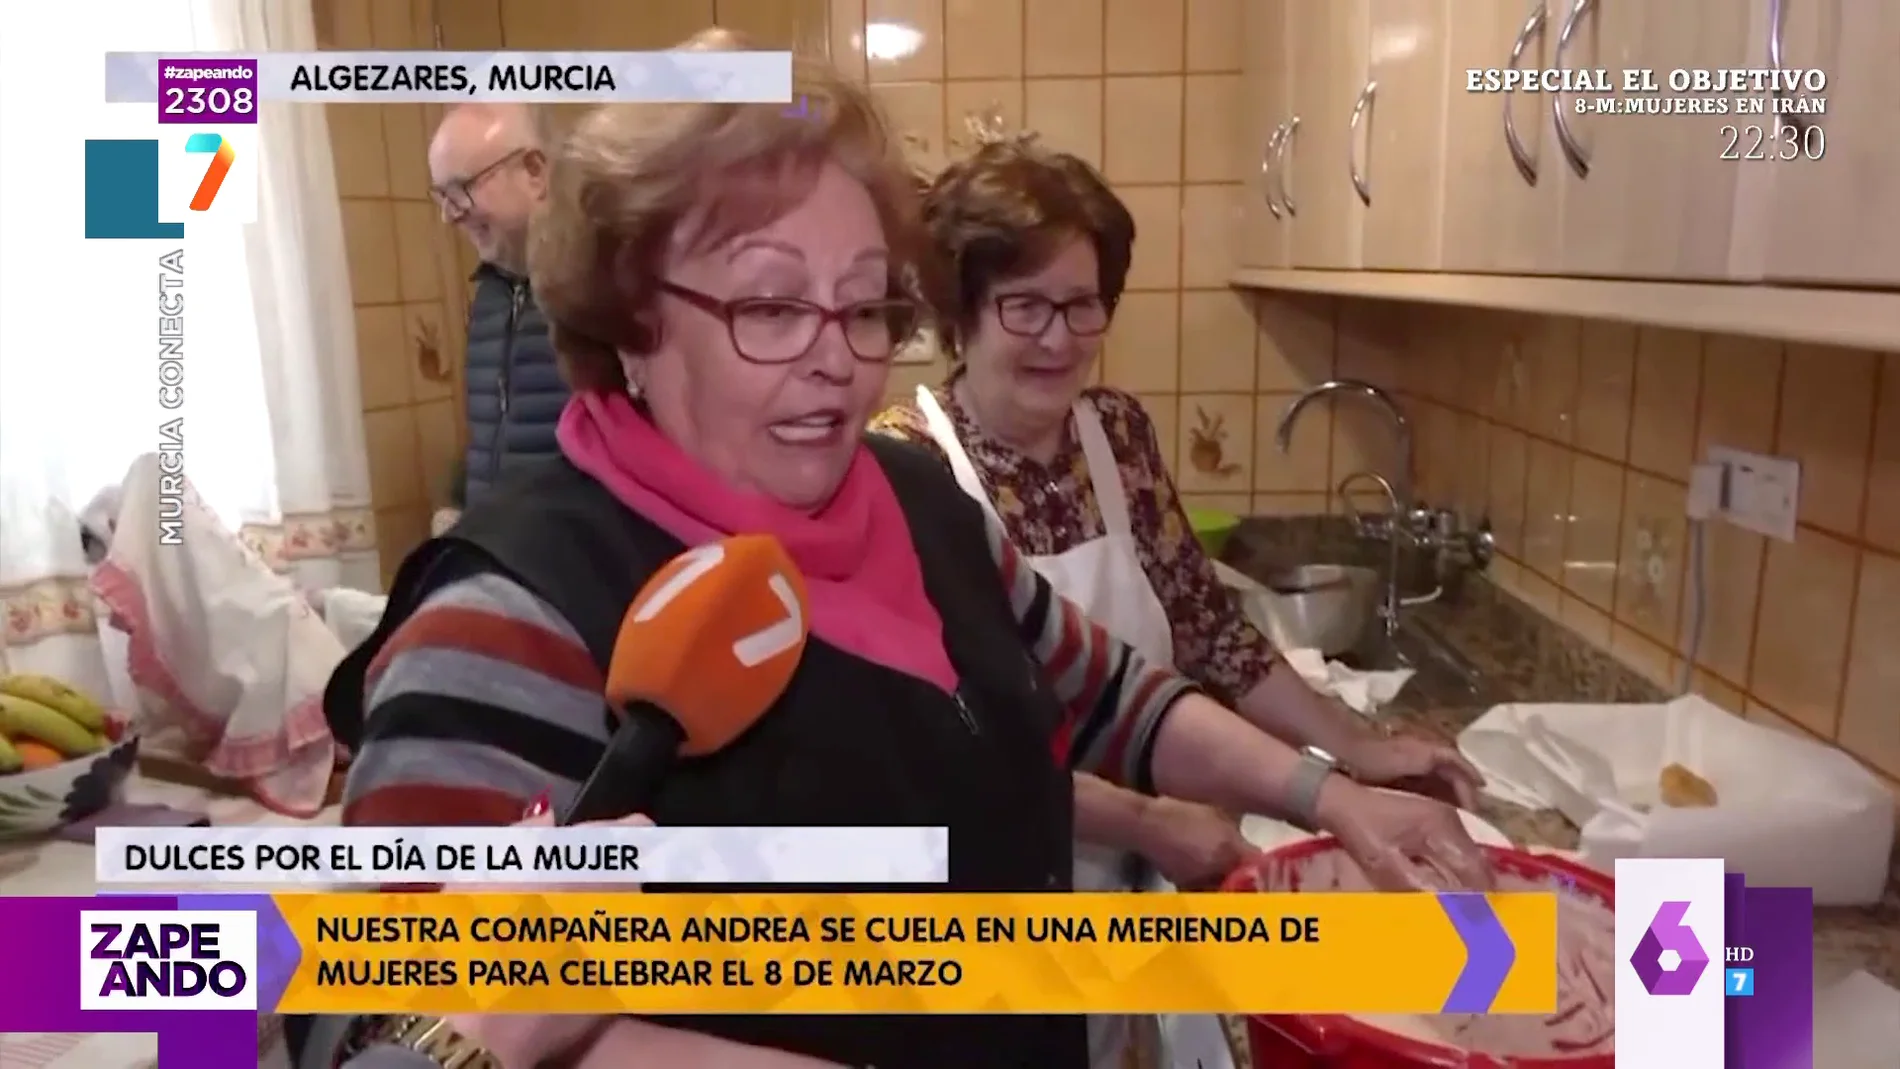 El alegato feminista de una señora de Murcia